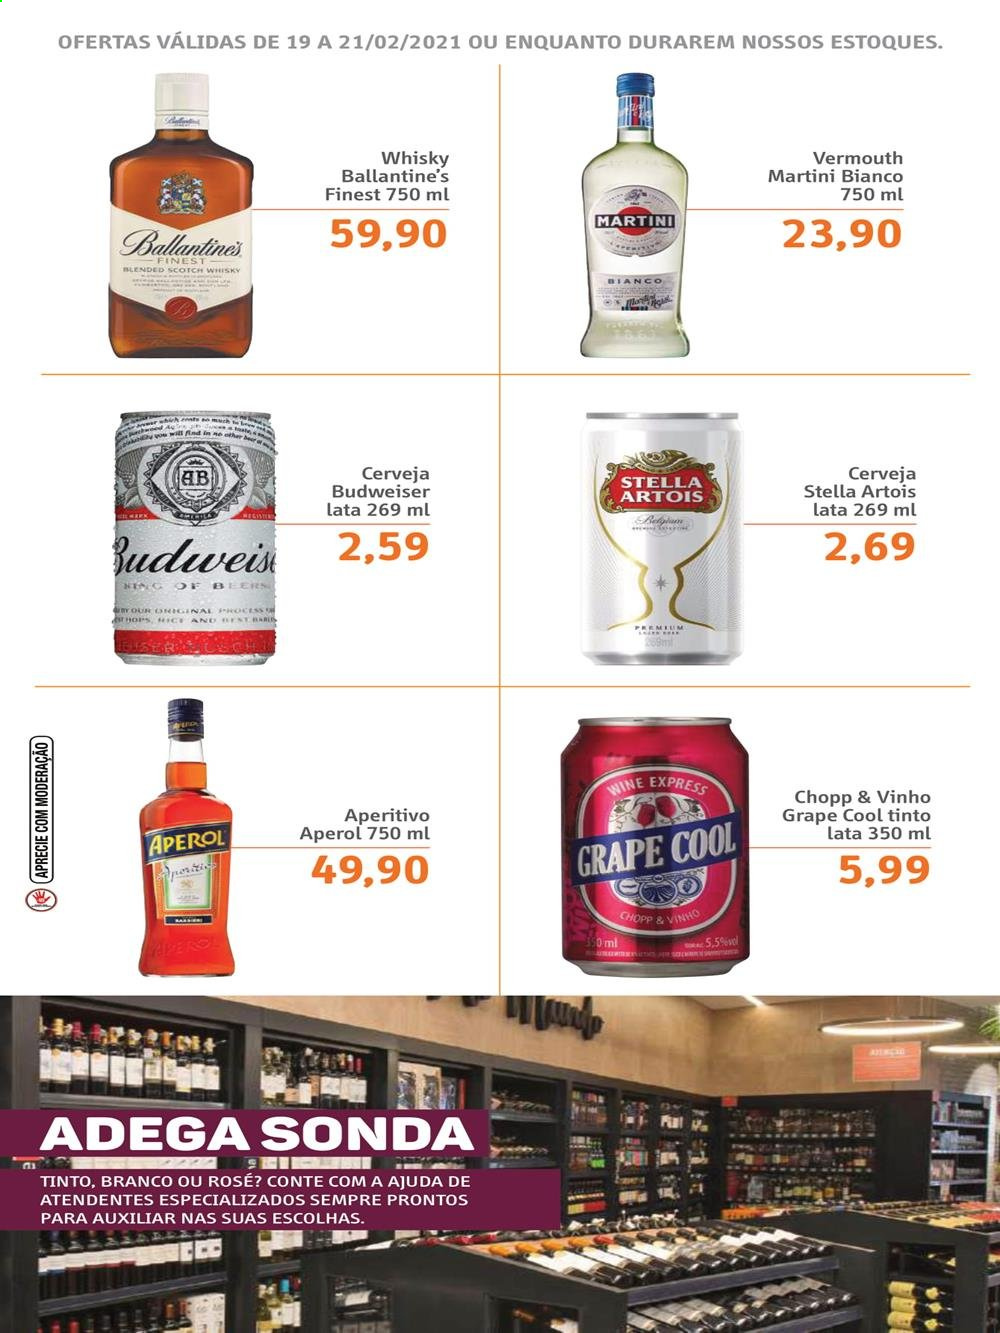 thumbnail - Folheto Sonda Supermercados - 19/02/2021 - 21/02/2021 - Produtos em promoção - Stella Artois, Budweiser, vinho, Aperol, vermouth, whiskey, scotch whisky, Martini. Página 3.